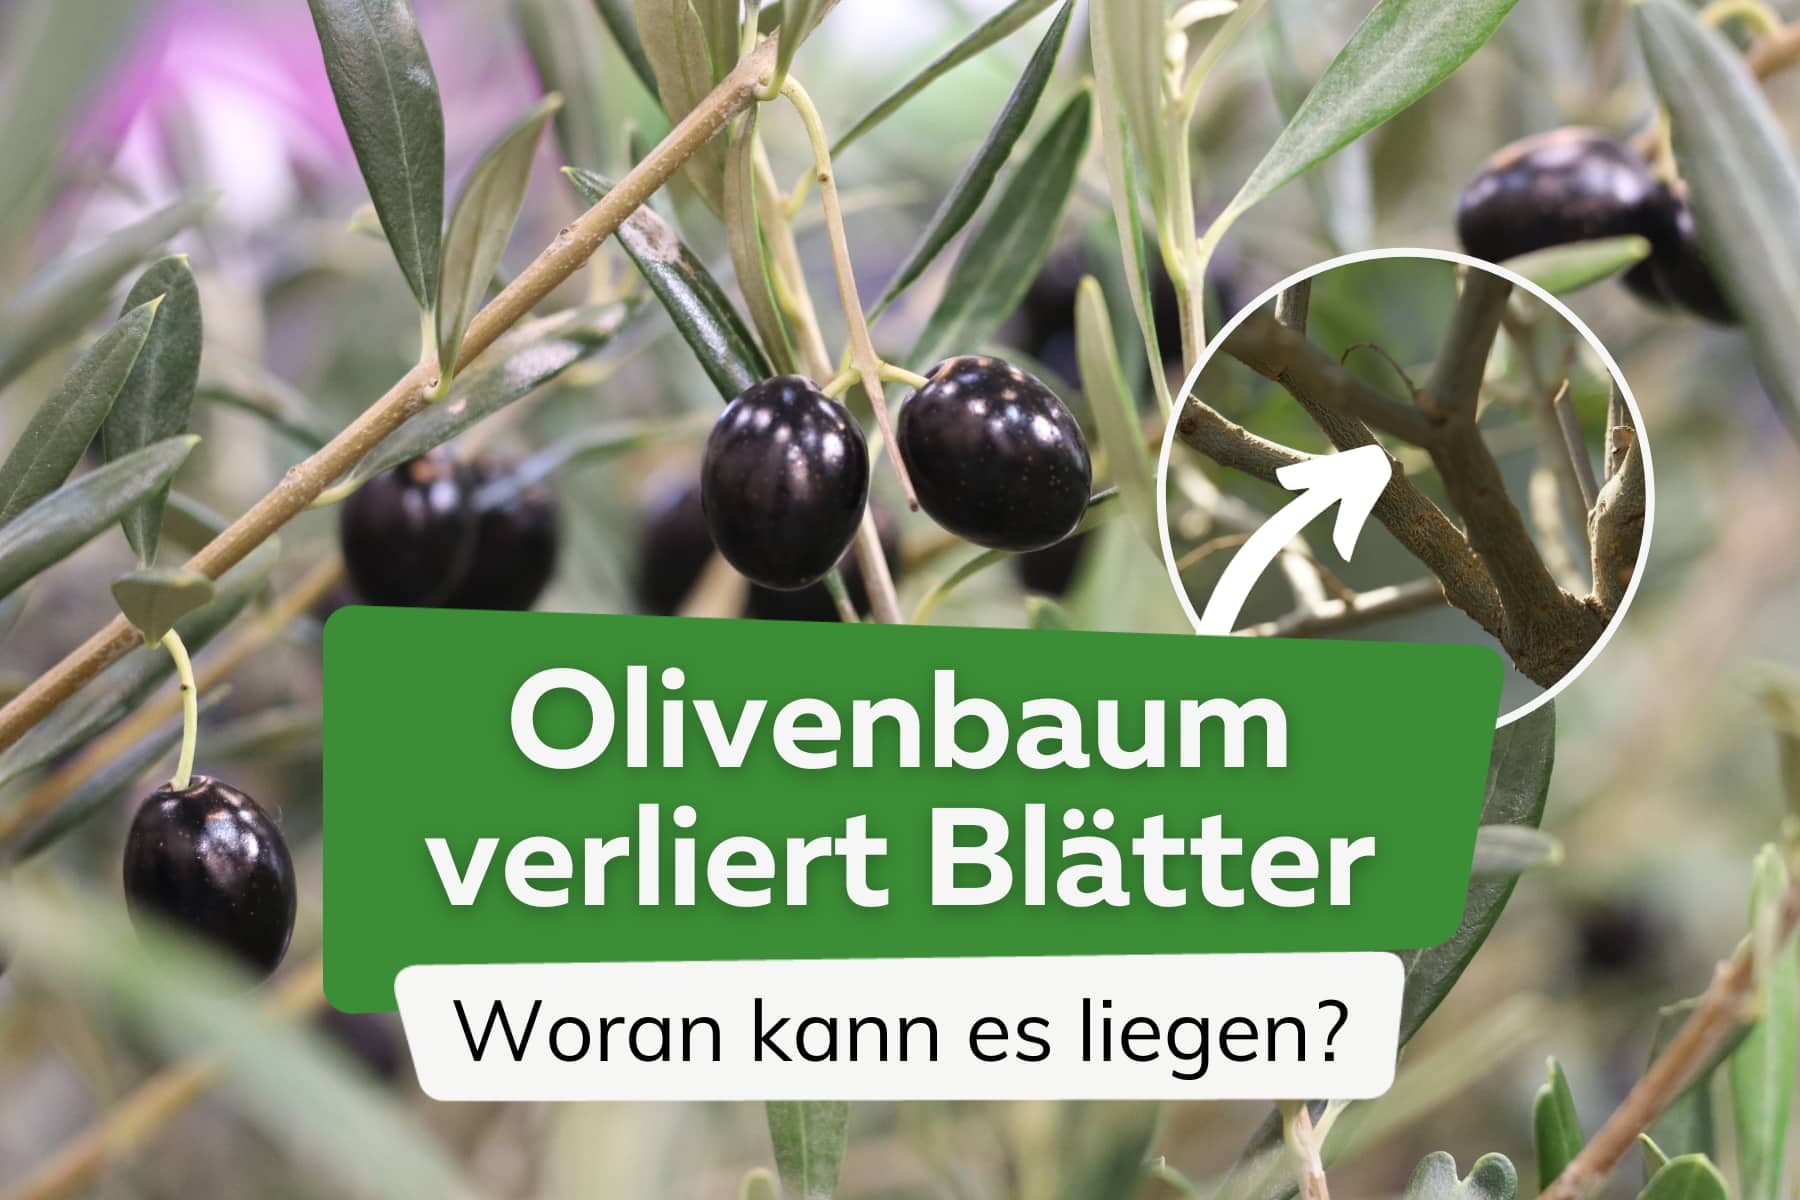 El olivo pierde hojas: causas y ayuda